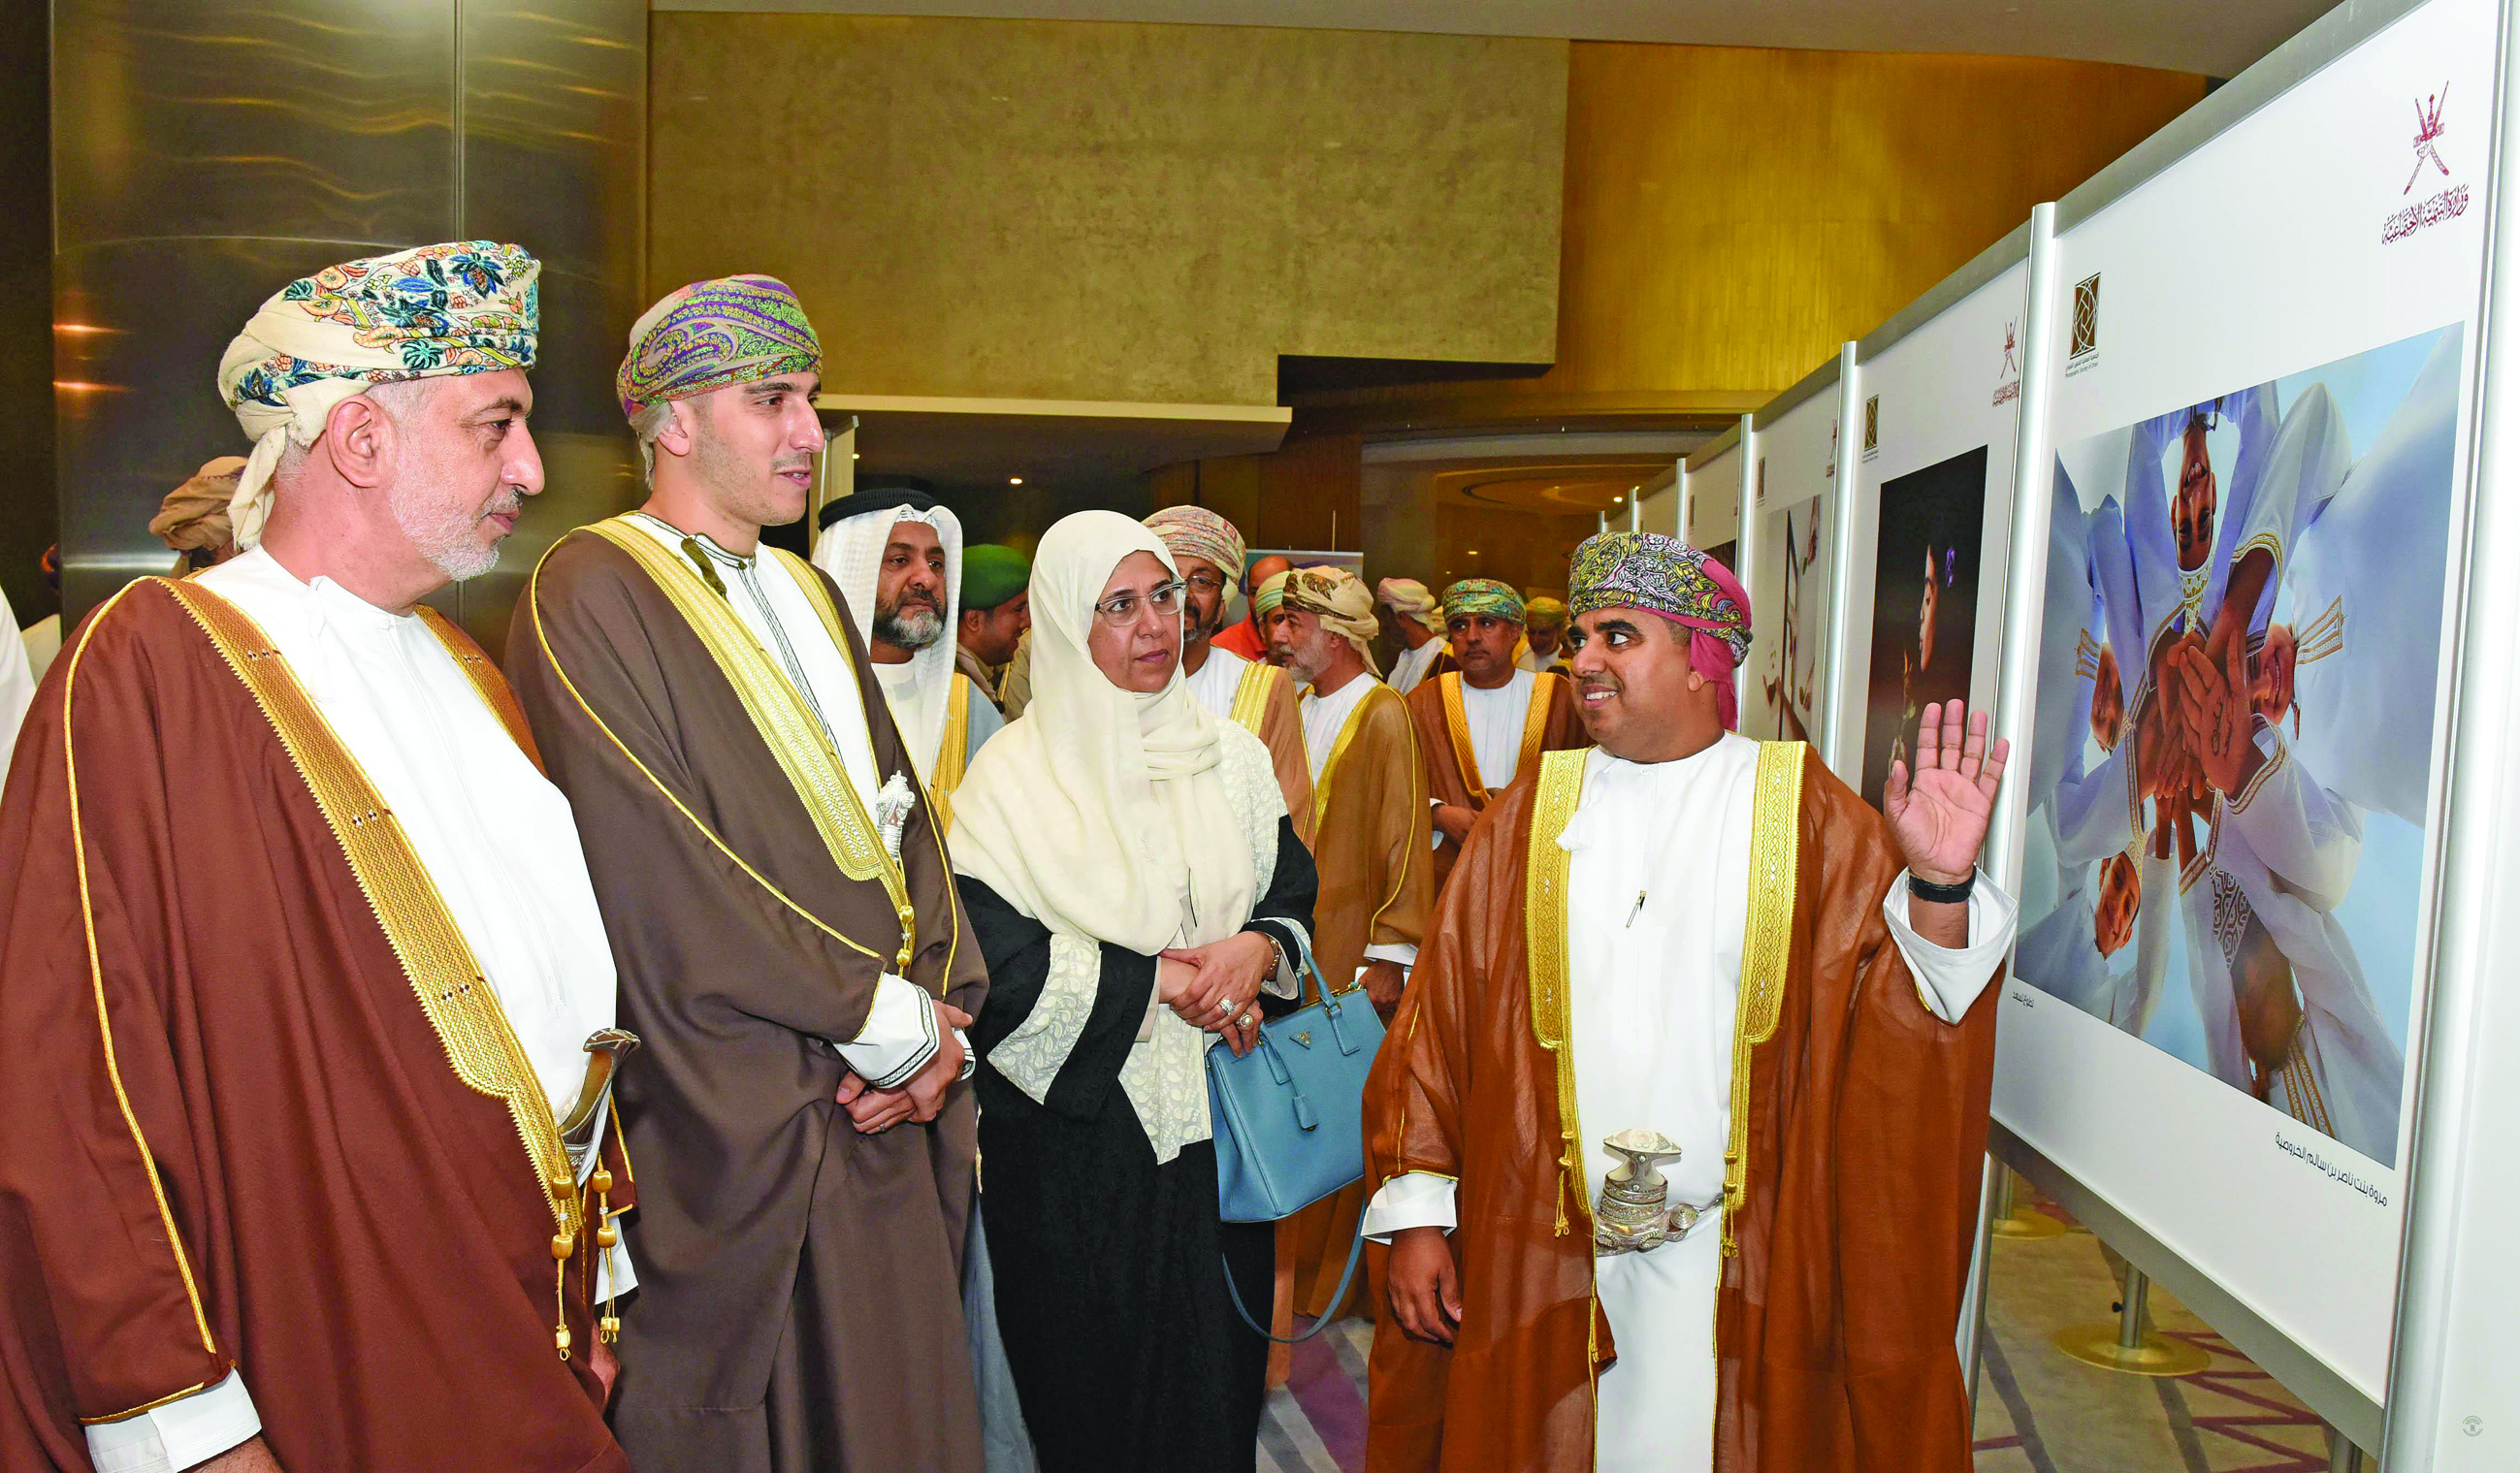 Symposium held in Oman on voluntary work